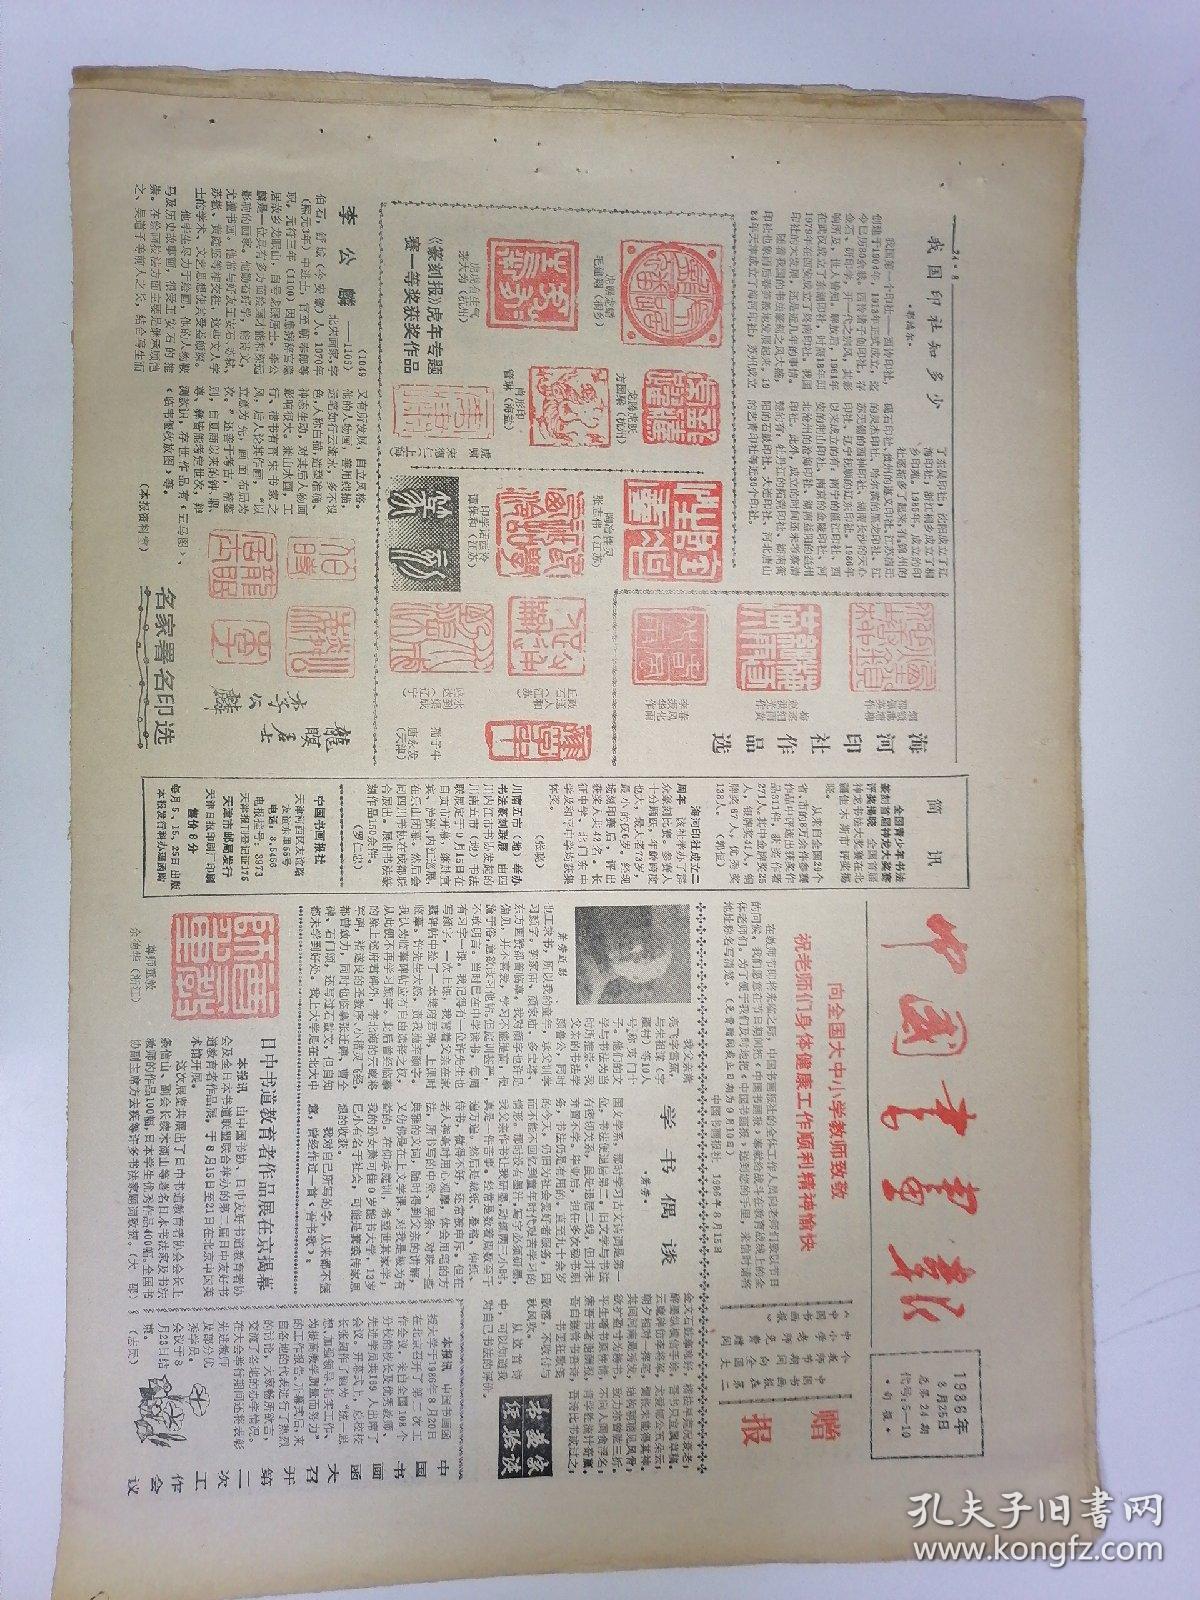 中国书画报，1986年8月25日16开八版，学书偶谈。我国印社知多少。切磋书画艺术建设精神文明。从横平竖直谈起。李斯的过失。